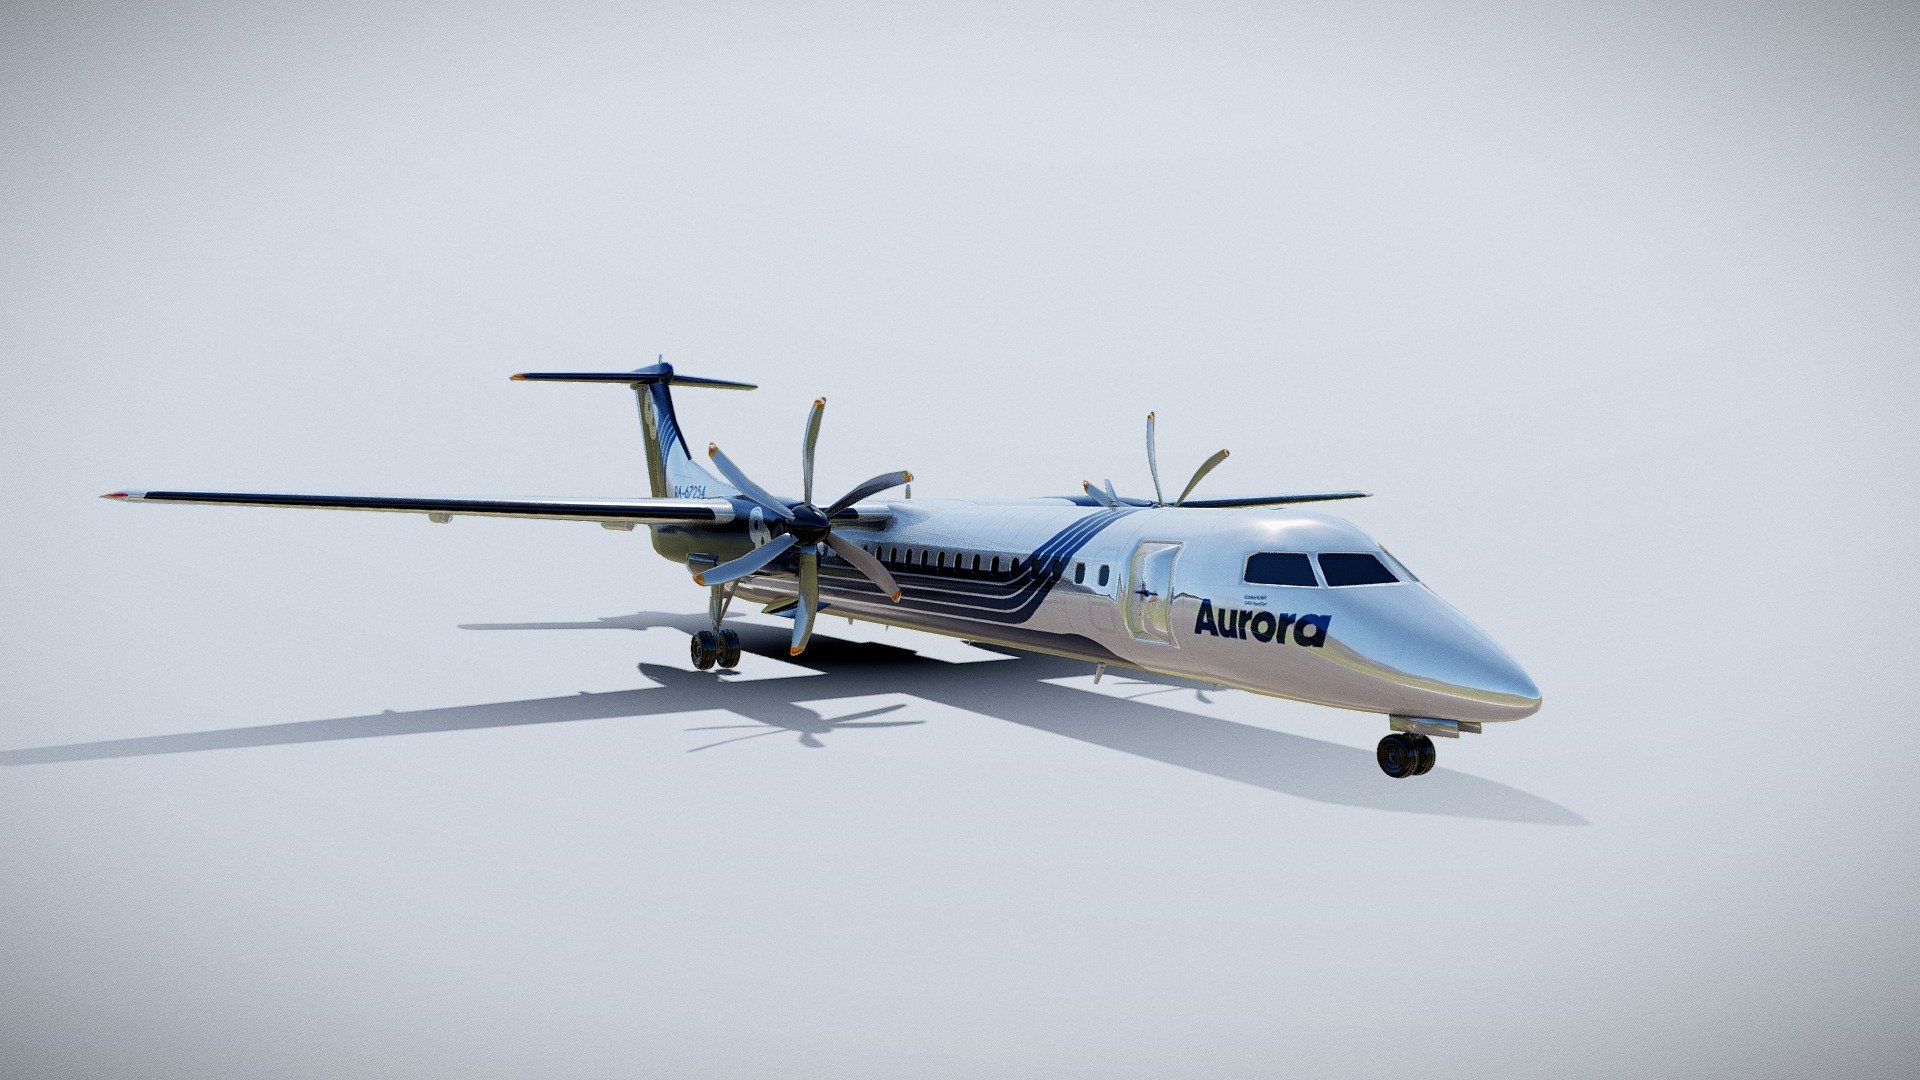 Aurora Airlines 
Bombardier DHC-8 Q400
Q400 NextGen - Aurora Airlines DHC-8-Q400 - 3D model by aurora_airlines 3d model